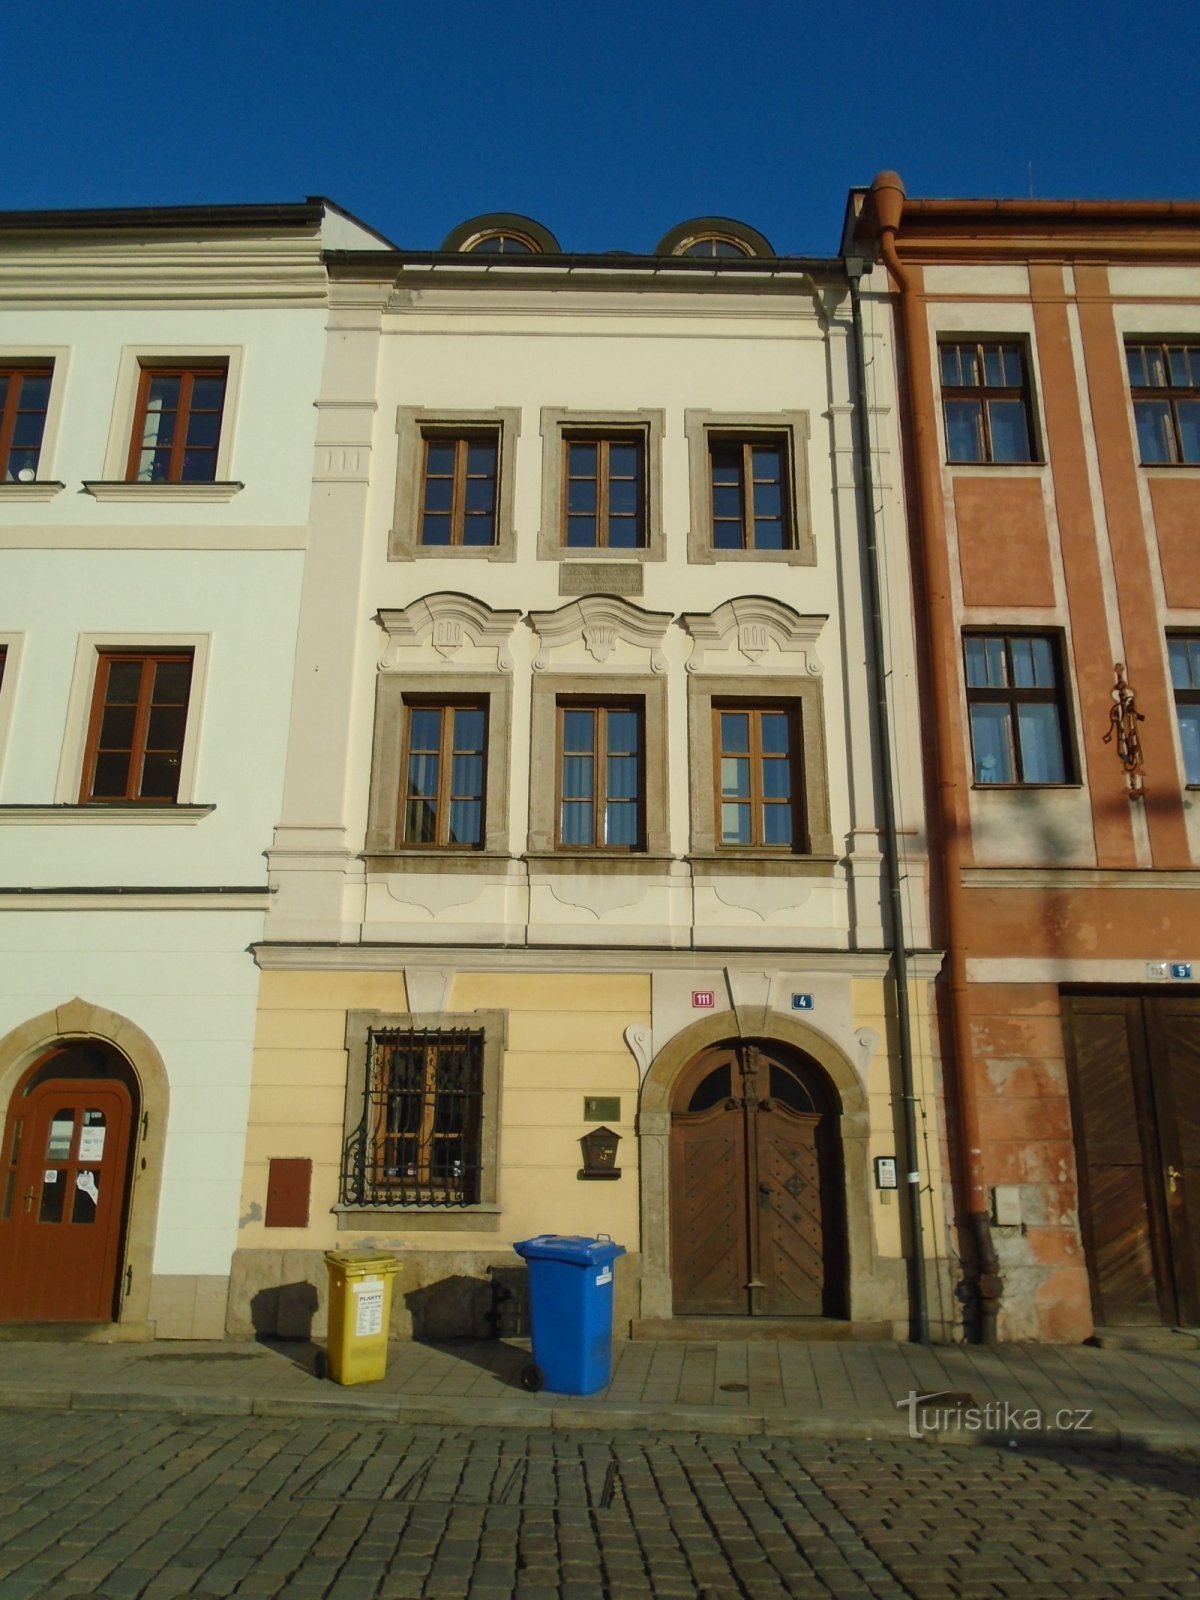 Malé náměstí br. 111 (Hradec Králové, 30.1.2019. travnja XNUMX.)